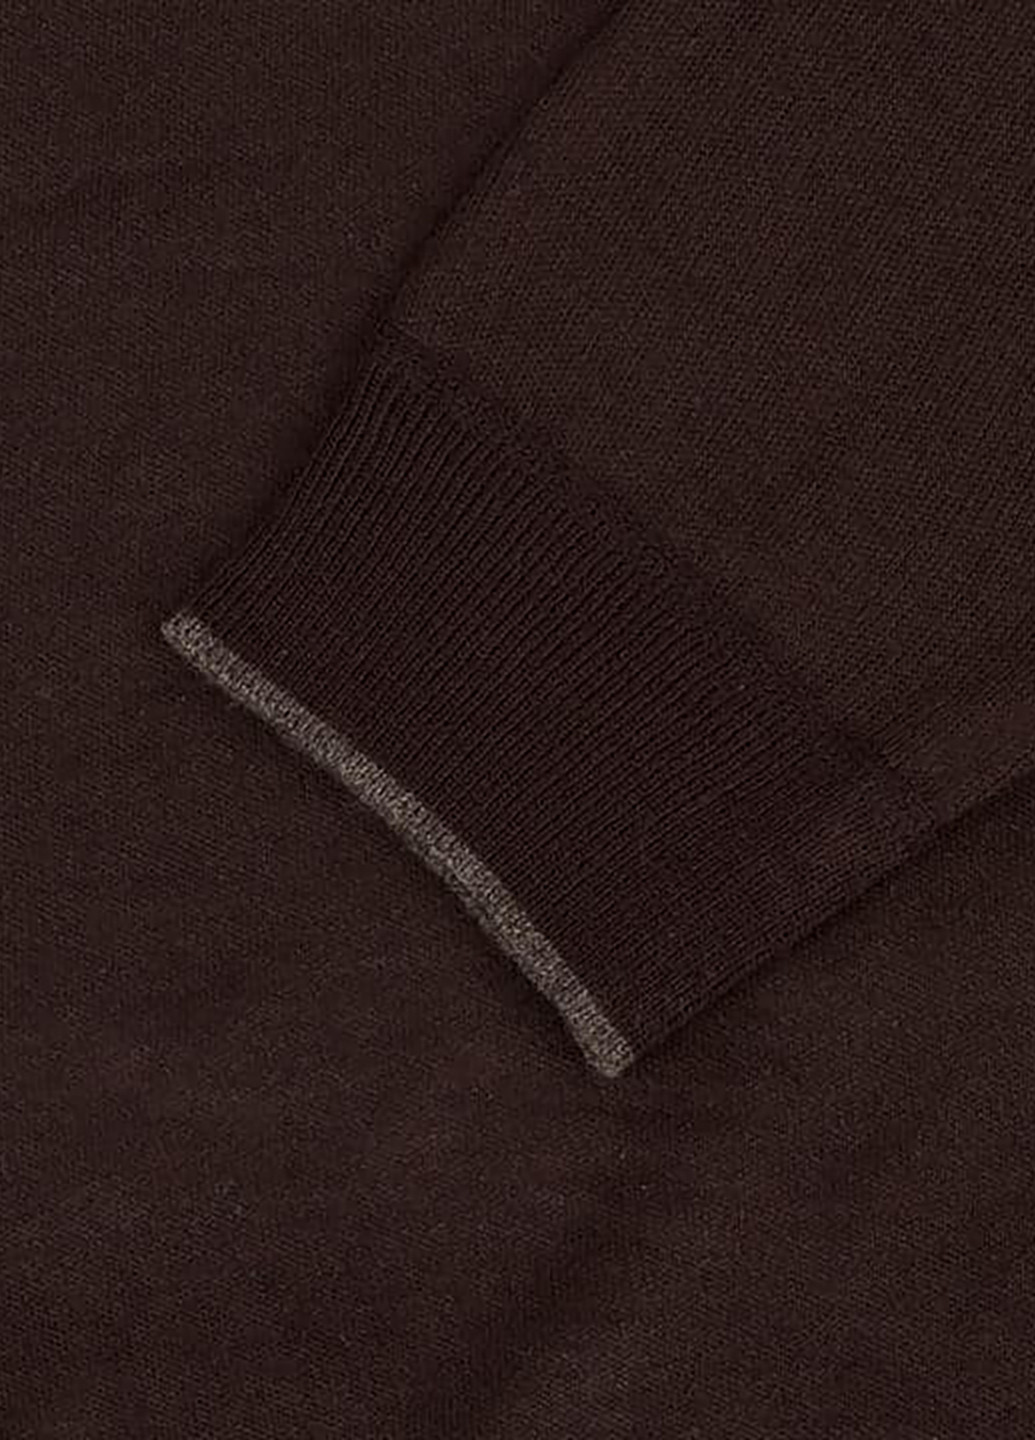 Коричневый демисезонный пуловер пуловер Lee Cooper